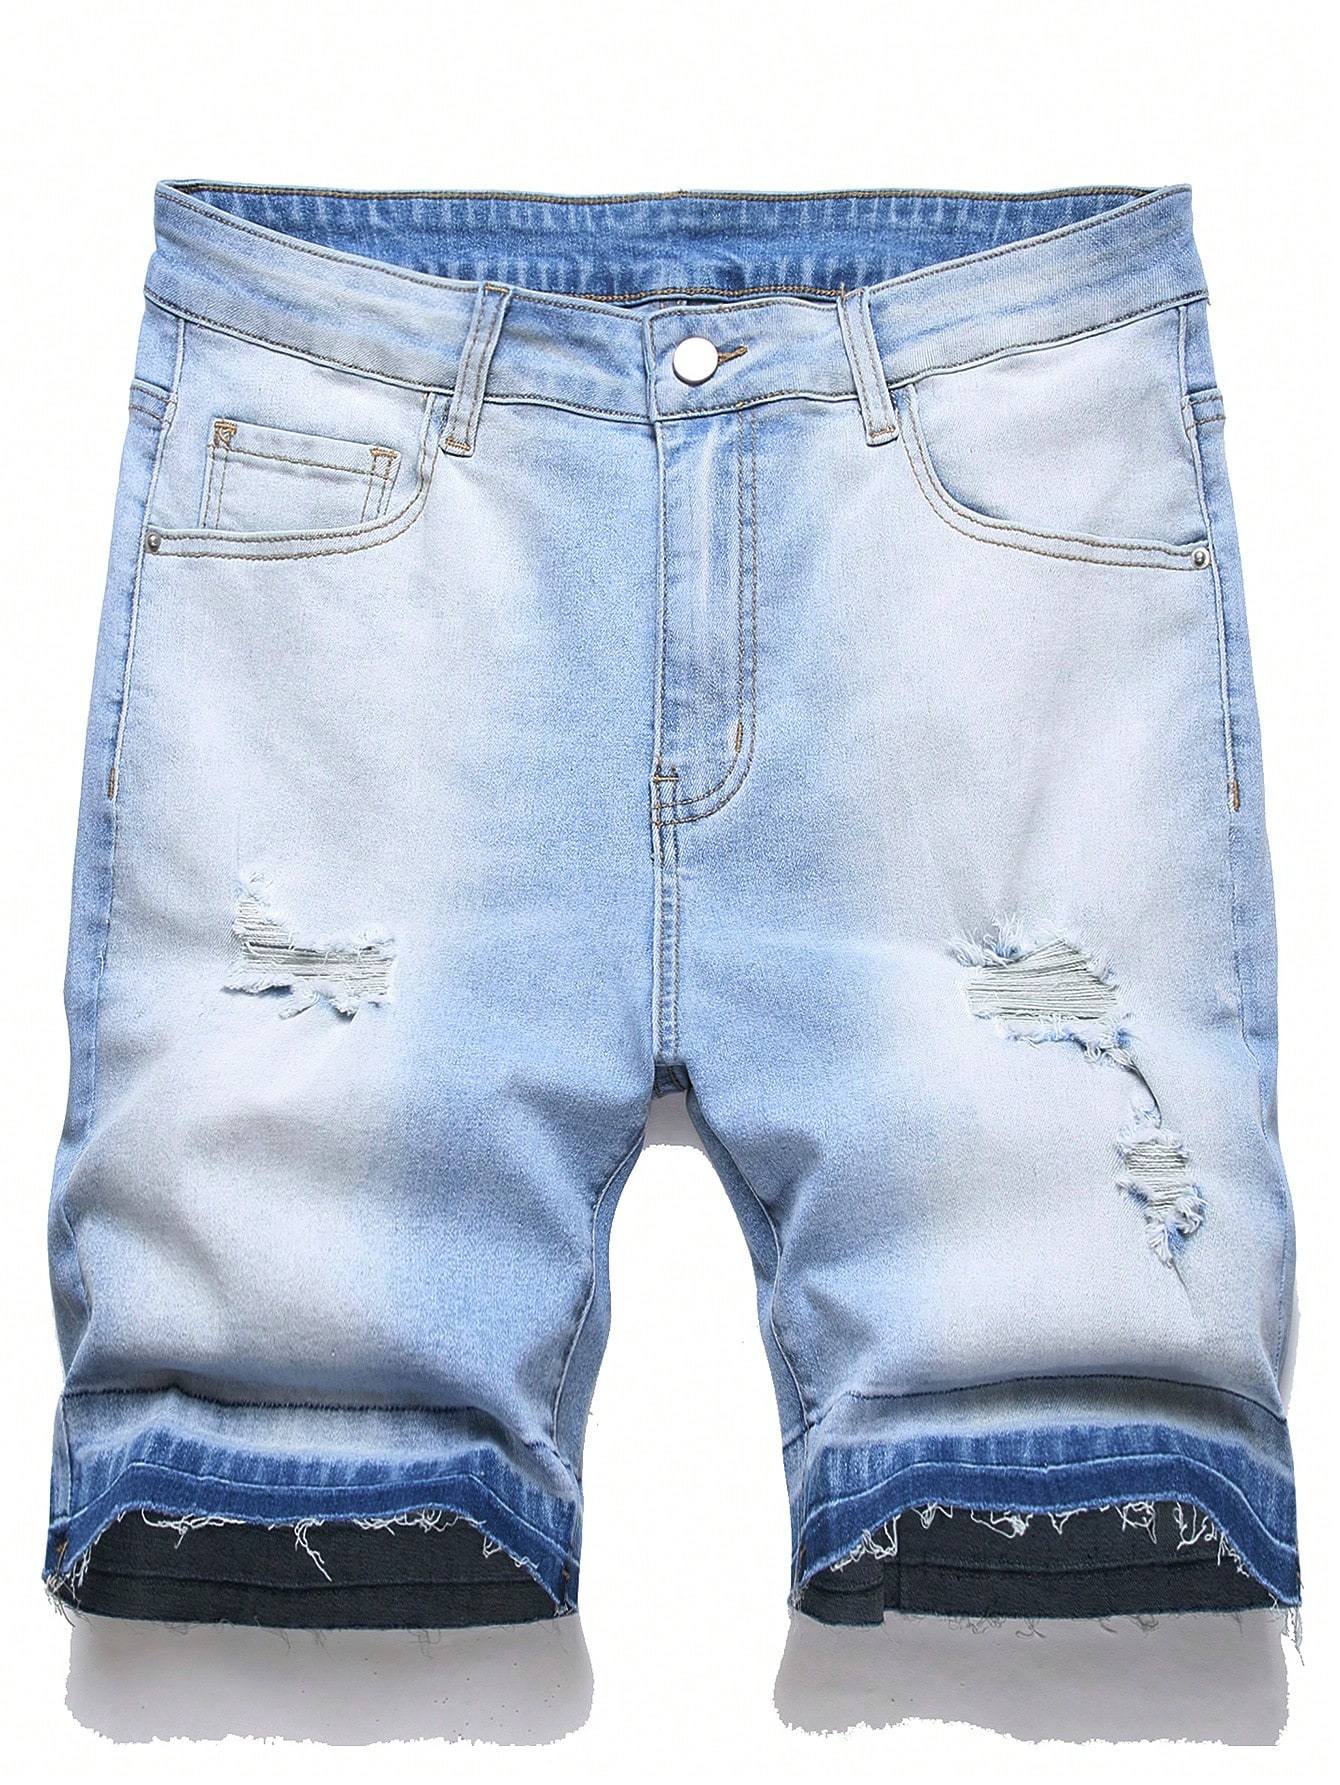 Мужские джинсовые шорты Manfinity EMRG с потертостями, легкая стирка фото